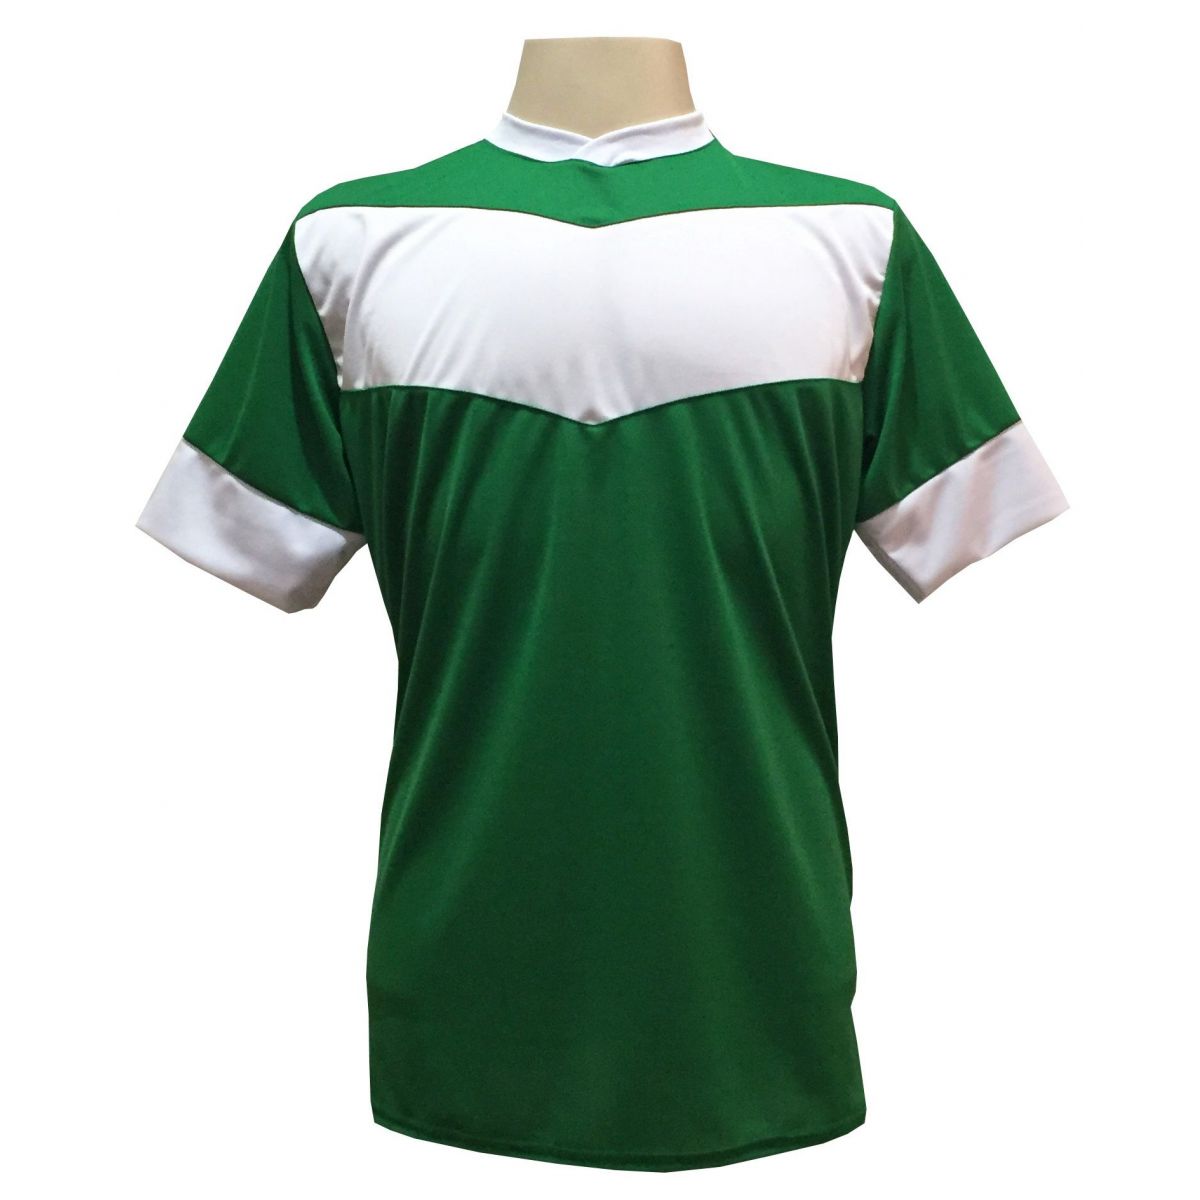 Uniforme Esportivo com 18 camisas modelo Columbus Verde/Branco + 18 calções modelo Madrid + 1 Goleiro + Brindes